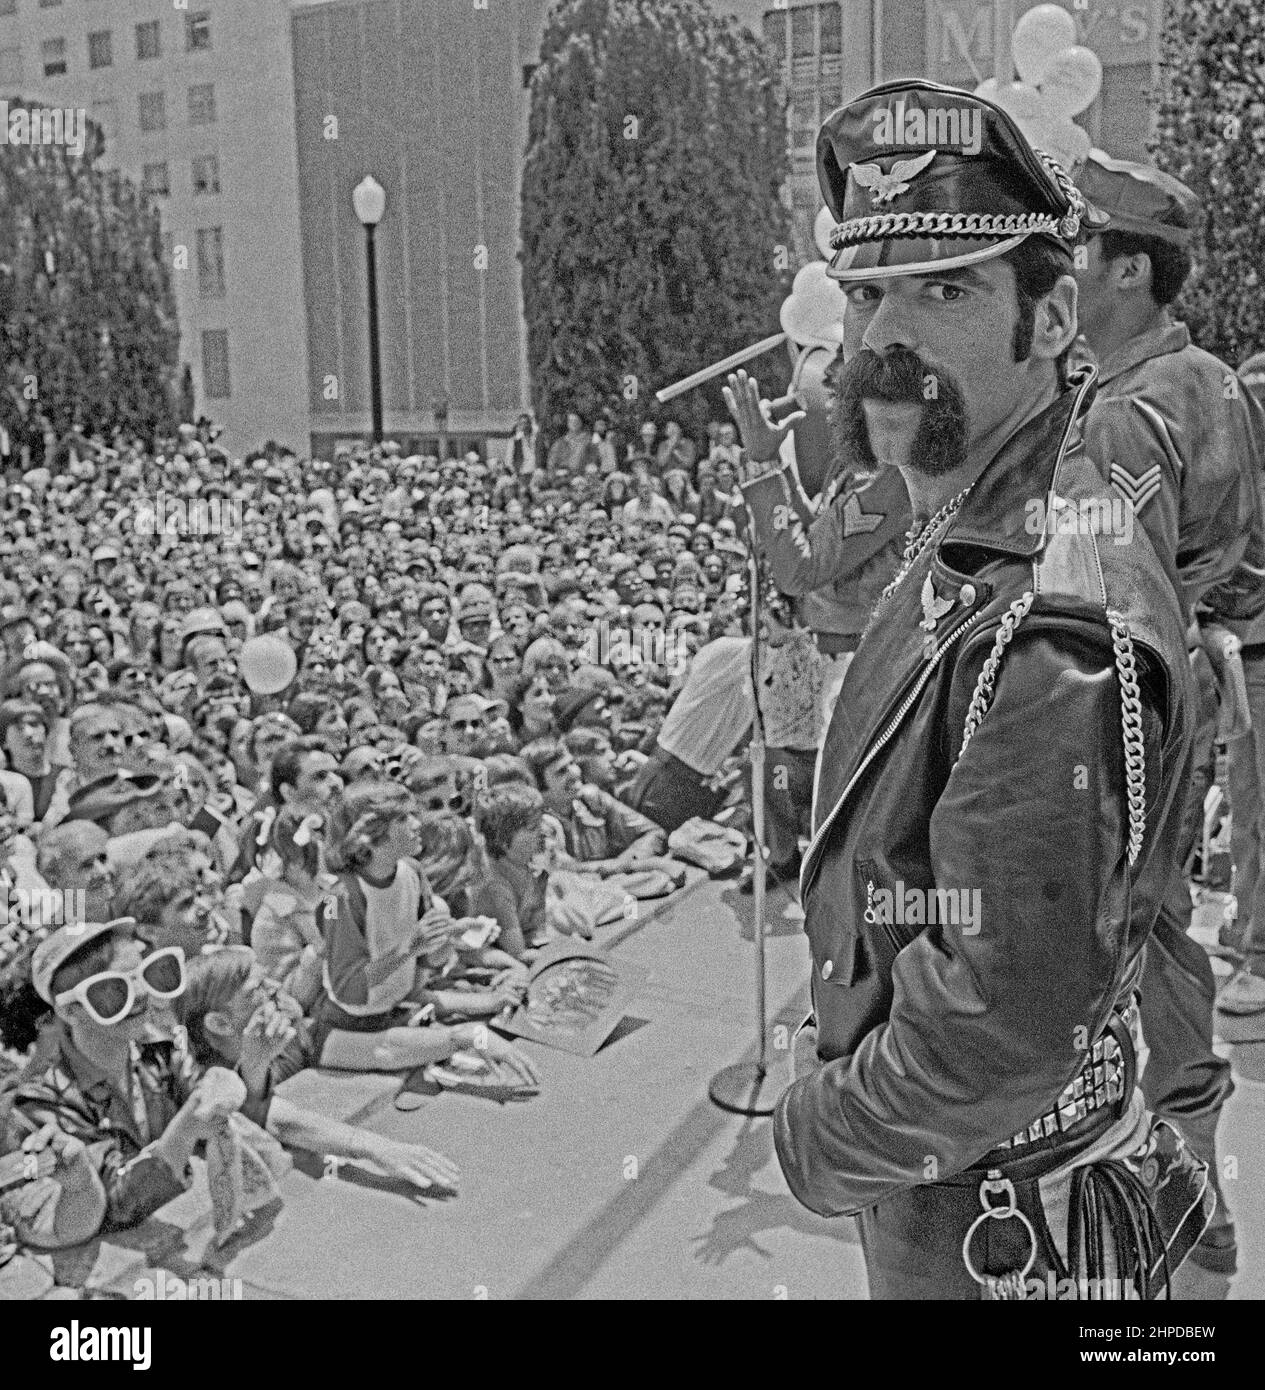 Clenn Michael Hughes le personnage original « leatherman » dans le groupe disco Village People se produit à San Francisco Union Square, en Californie. Juin 1980 Banque D'Images